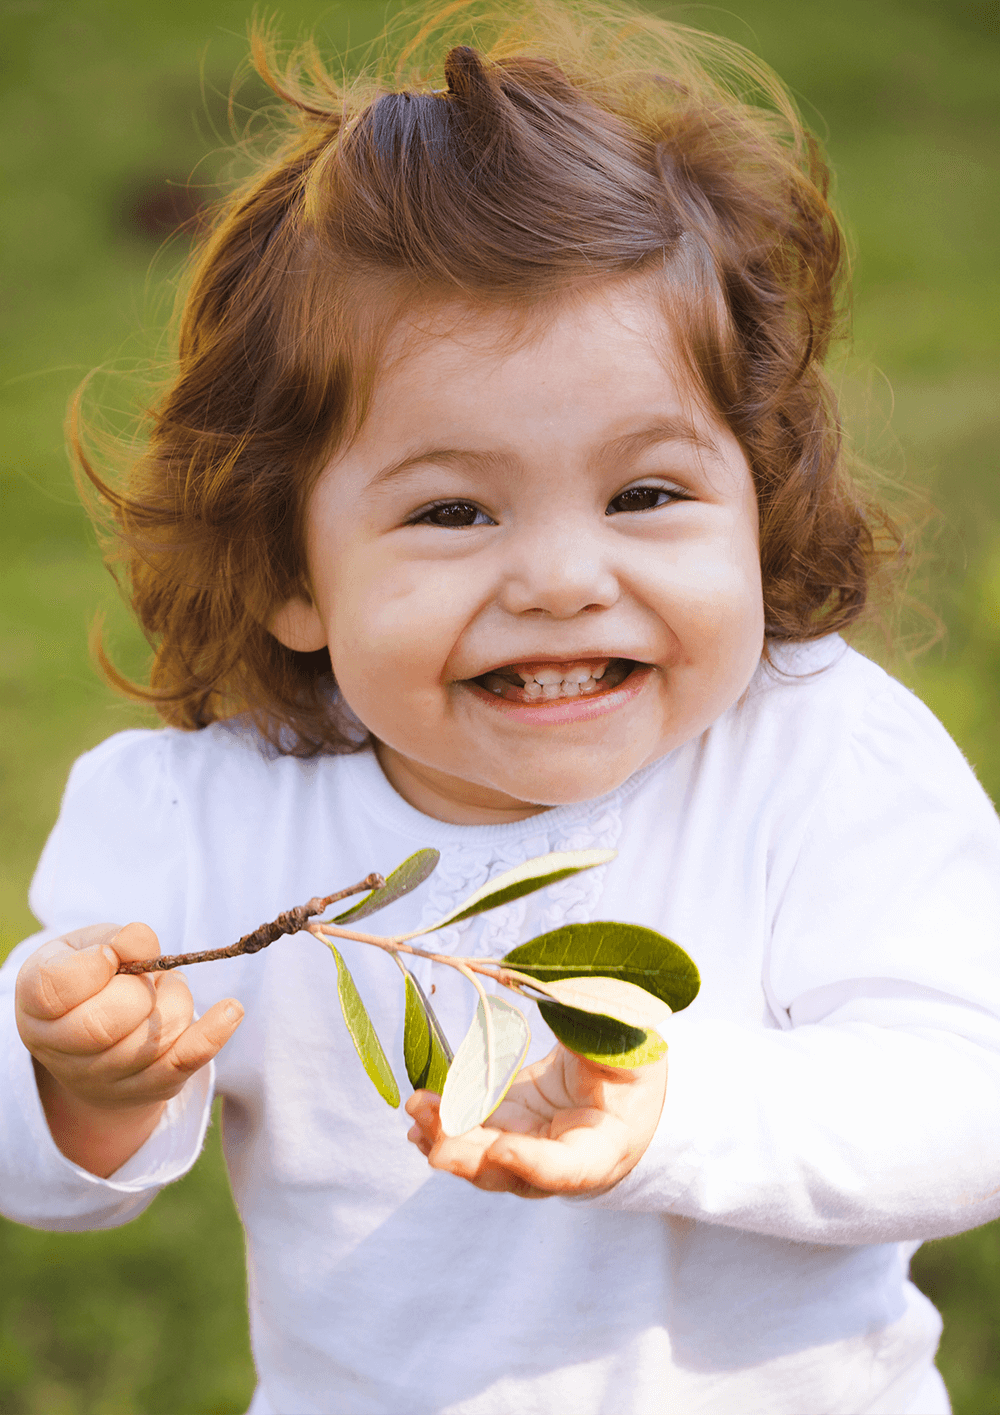 Radosne małe dziecko z żłobka trzyma w dłoni liść i uśmiecha się.